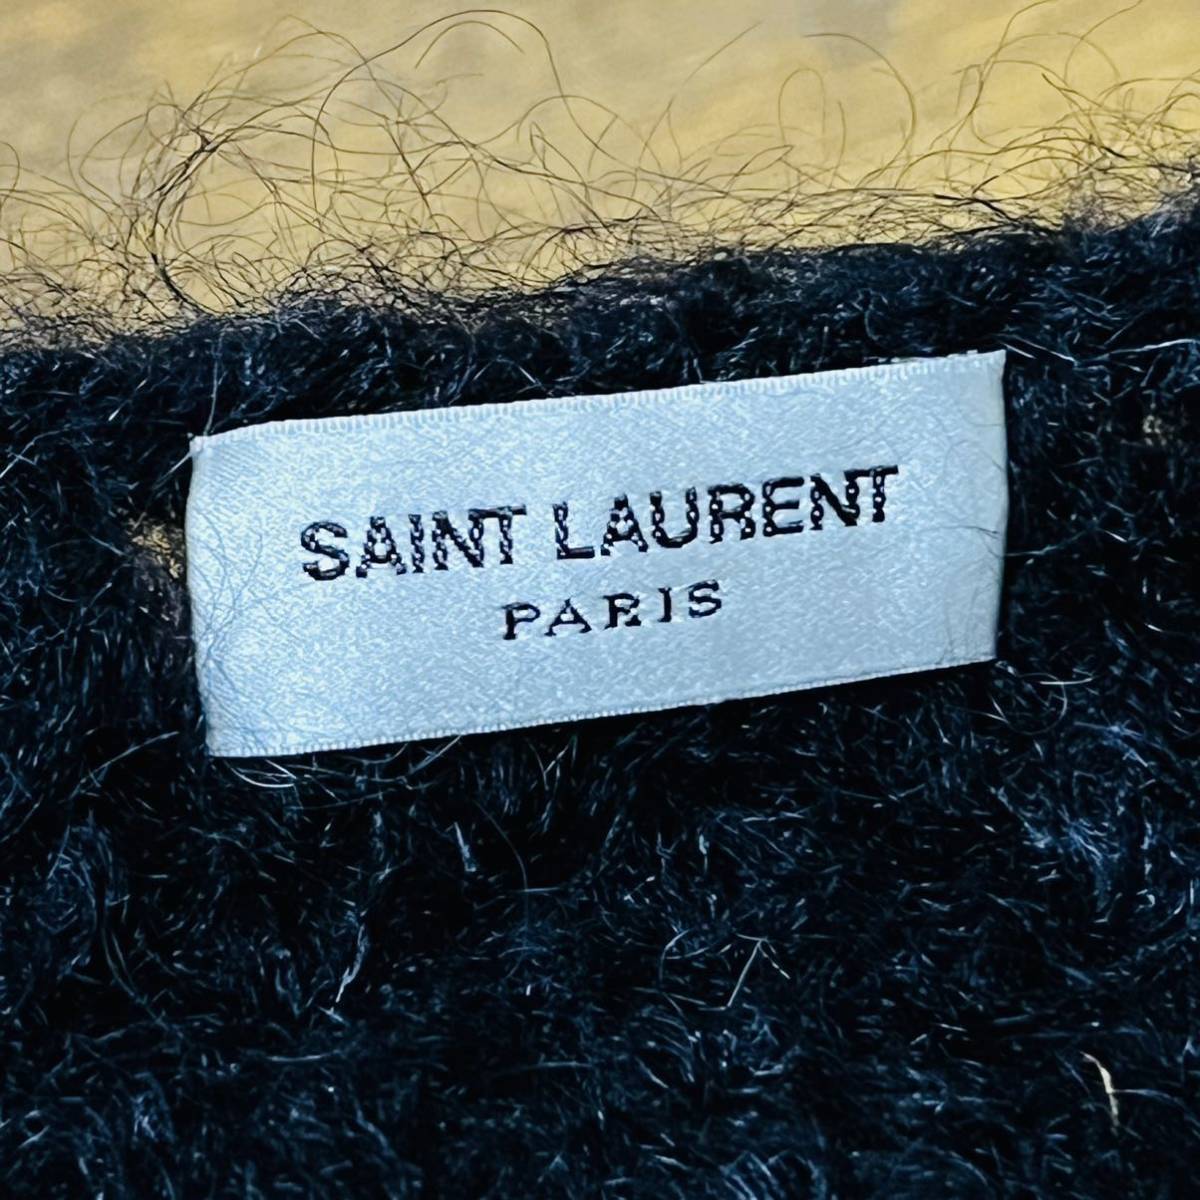 SAINT LAURENT PARIS солнечный rolan Париж размер S Эдди потертость man 13AW большой размер mo волосы окантовка вязаный белый чёрный свитер 